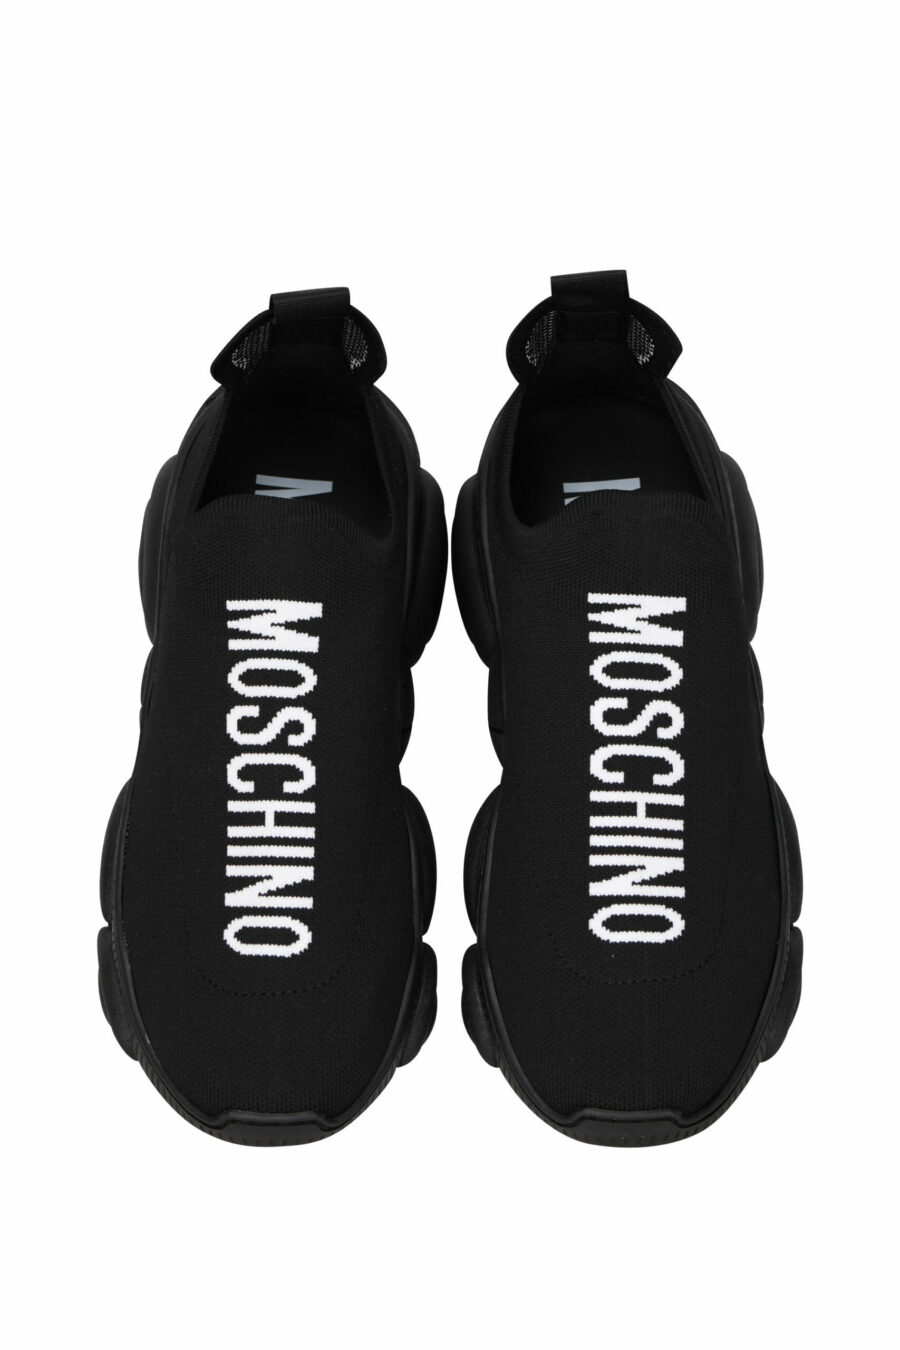 Schwarze "orso35"-Stoffschuhe mit schwarzem vertikalen Logo und "Teddy"-Sohle - 8054388264037 4 skaliert